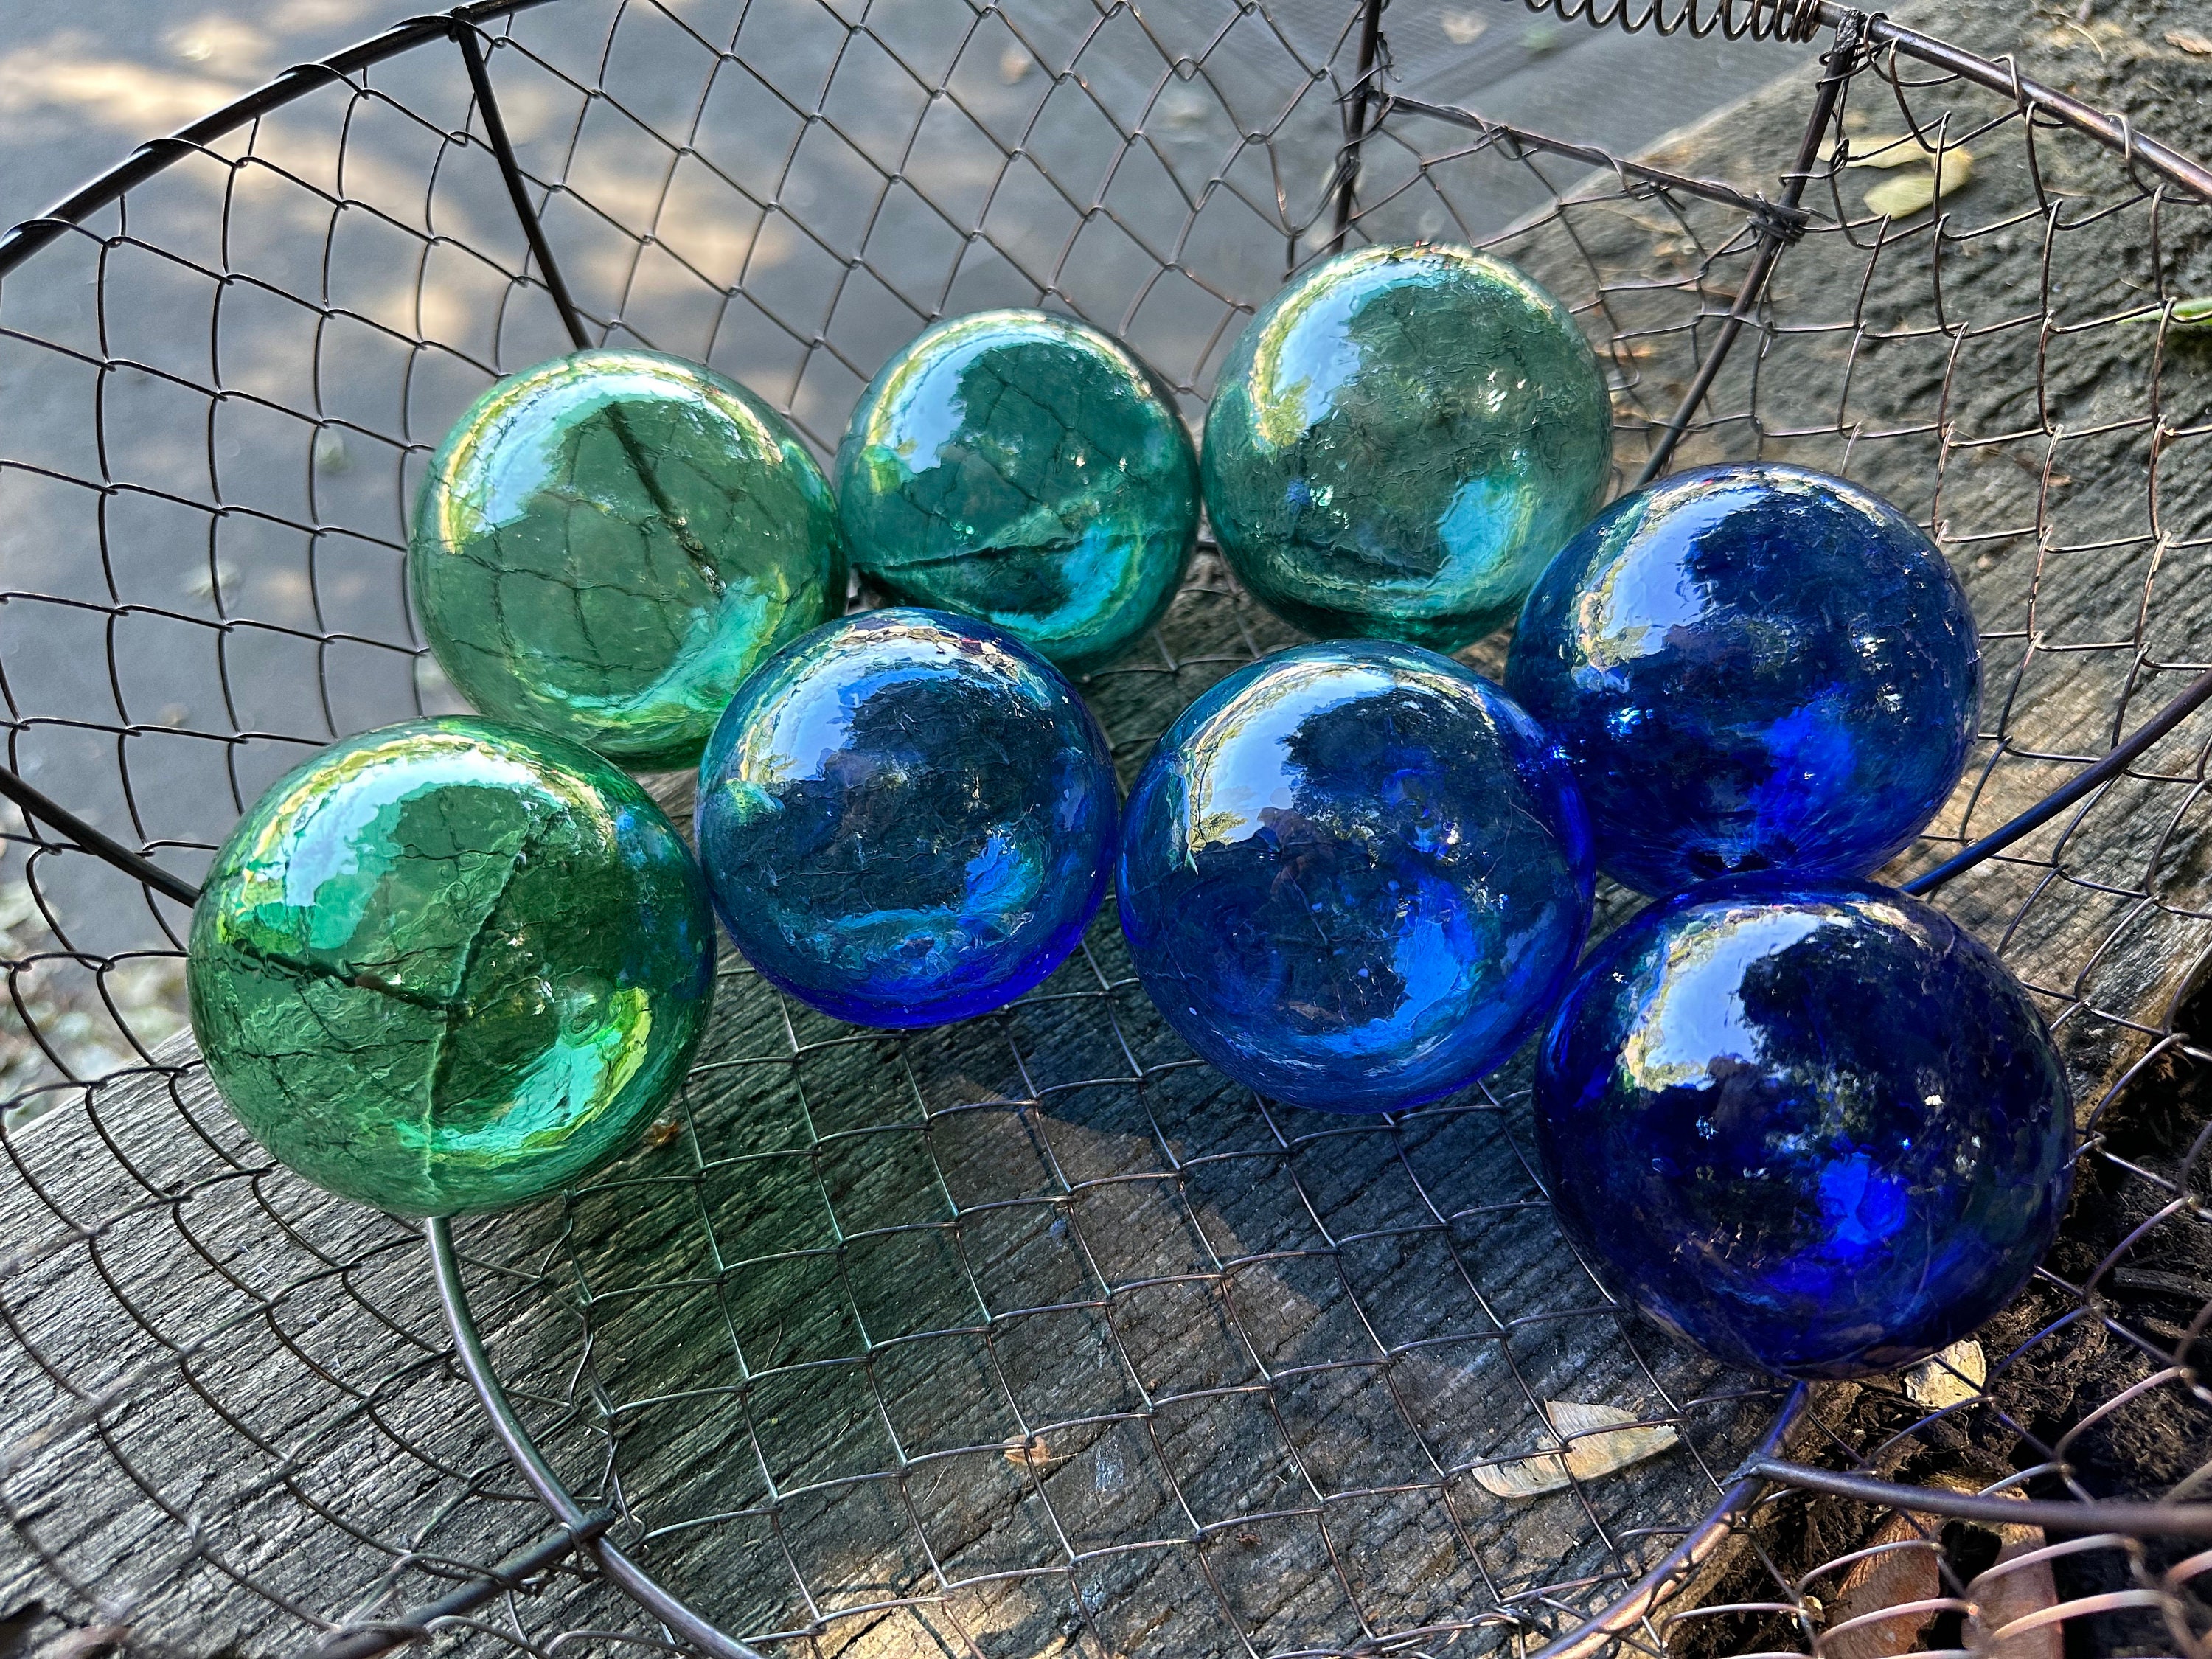 Smallest Beach Glass Floats, Set of 8 Blown Glass Balls, Blue Green Aqua  Cobalt Interior Design Spheres, Garden Pond Orbs, Avalon Glassworks 